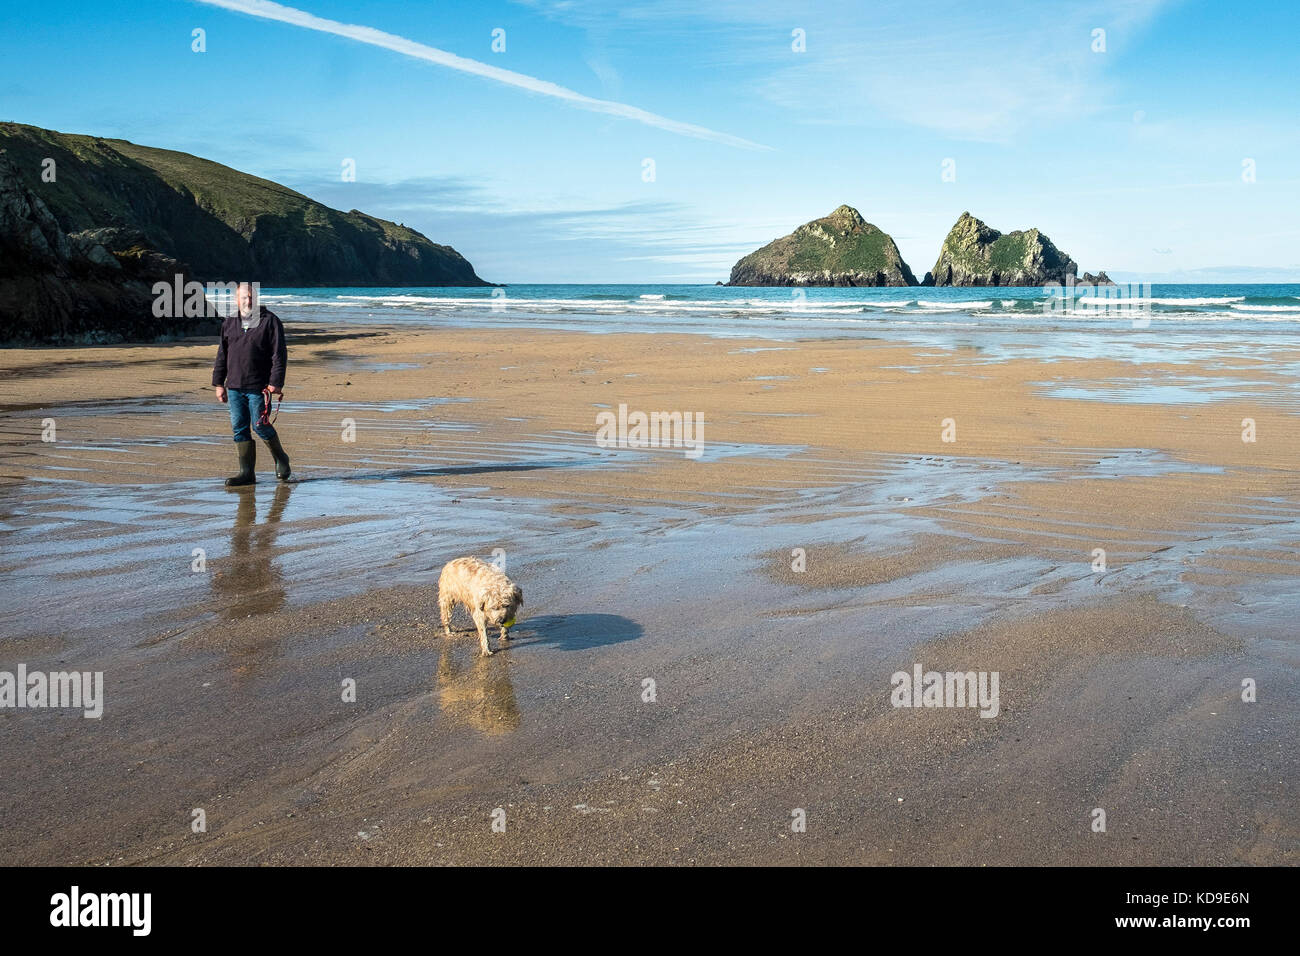 Une marchette pour chiens sur la plage à Holywell Bay Cornwall - Holywell Bay l'un des lieux de tournage emblématiques de Poldark à Cornwall. Banque D'Images